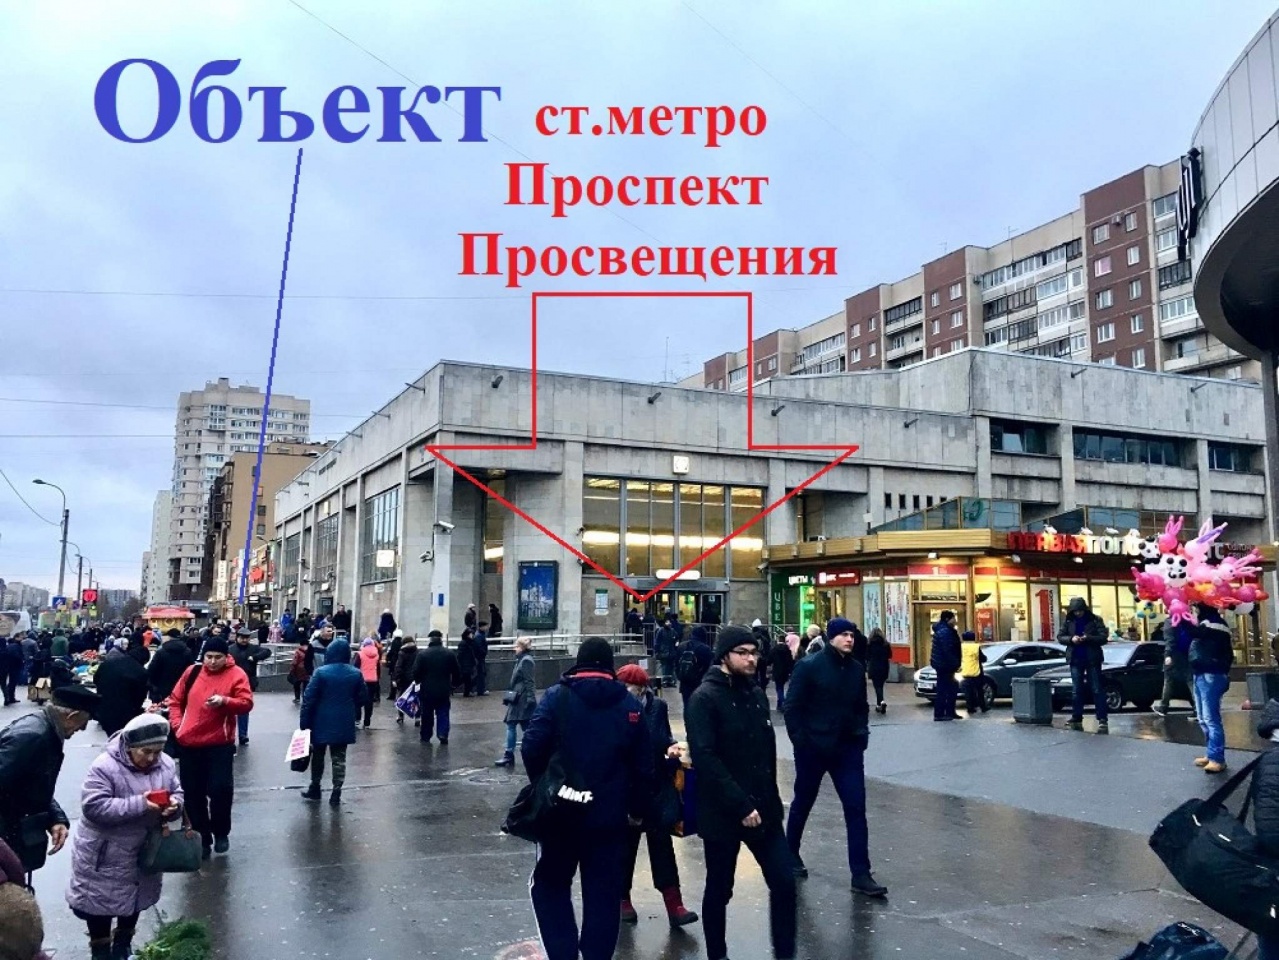 Ст метро проспект Просвещения Санкт-Петербург